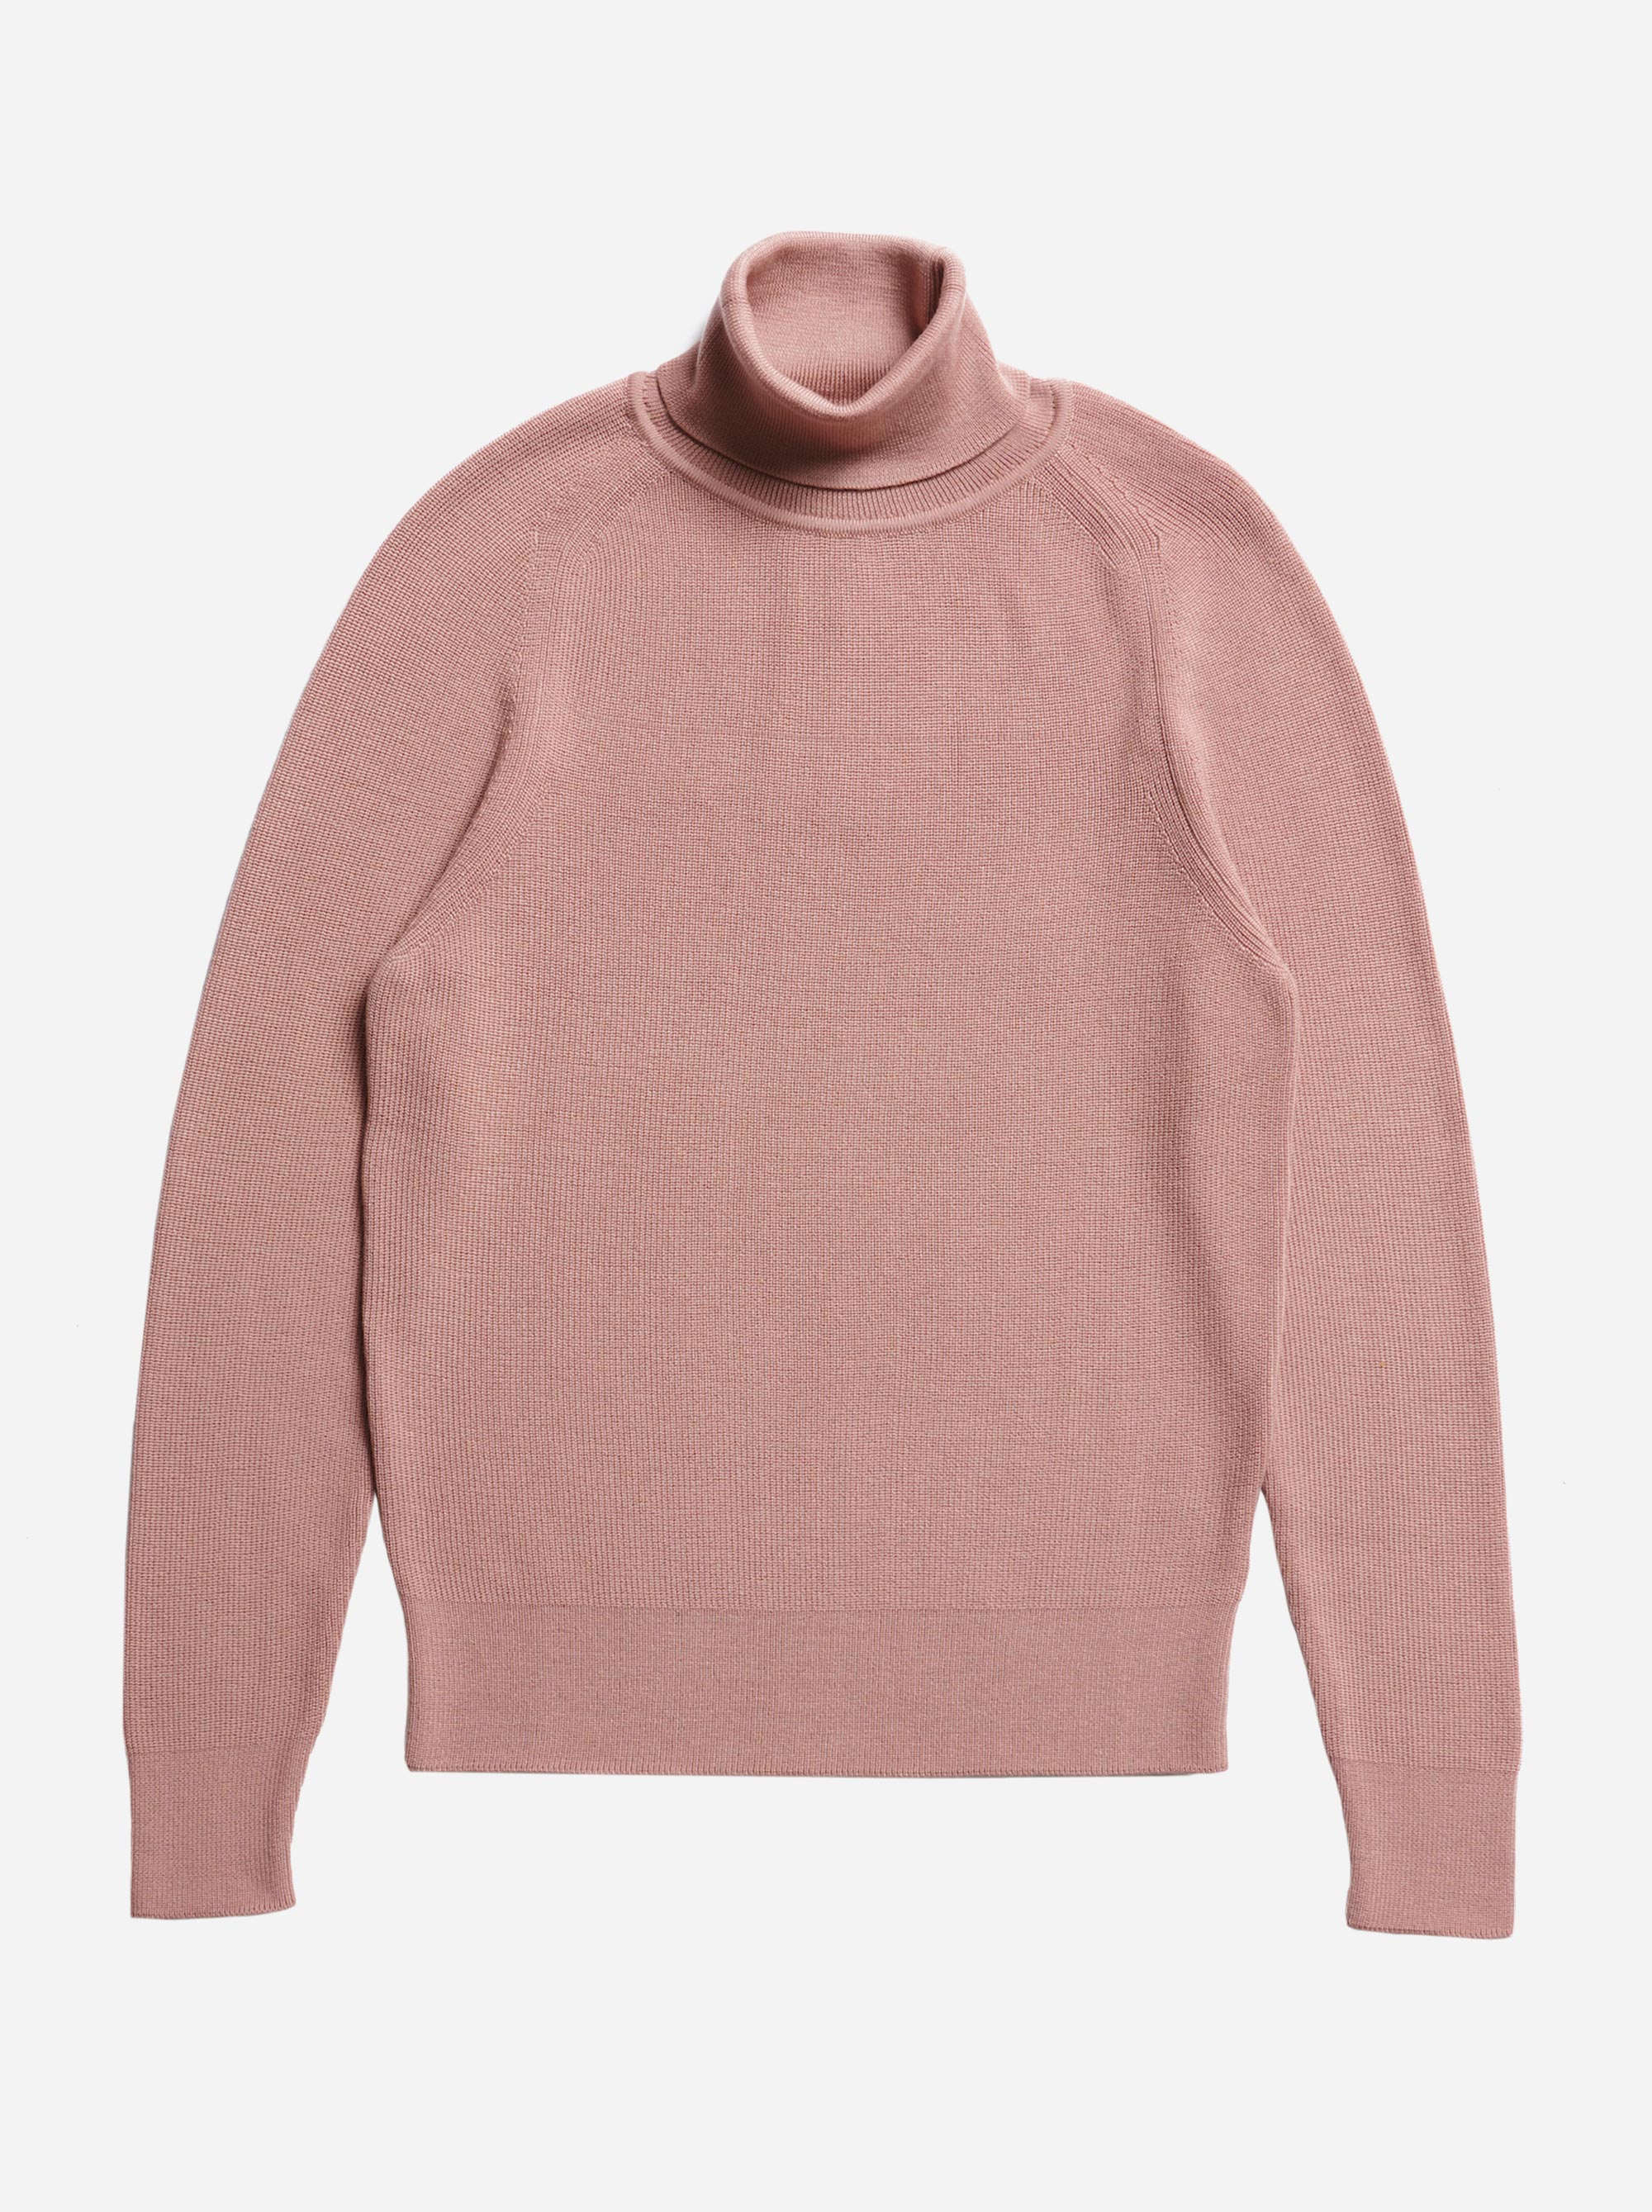 Teym - Turtleneck - The Merino Sweater - Men - Pink - 5